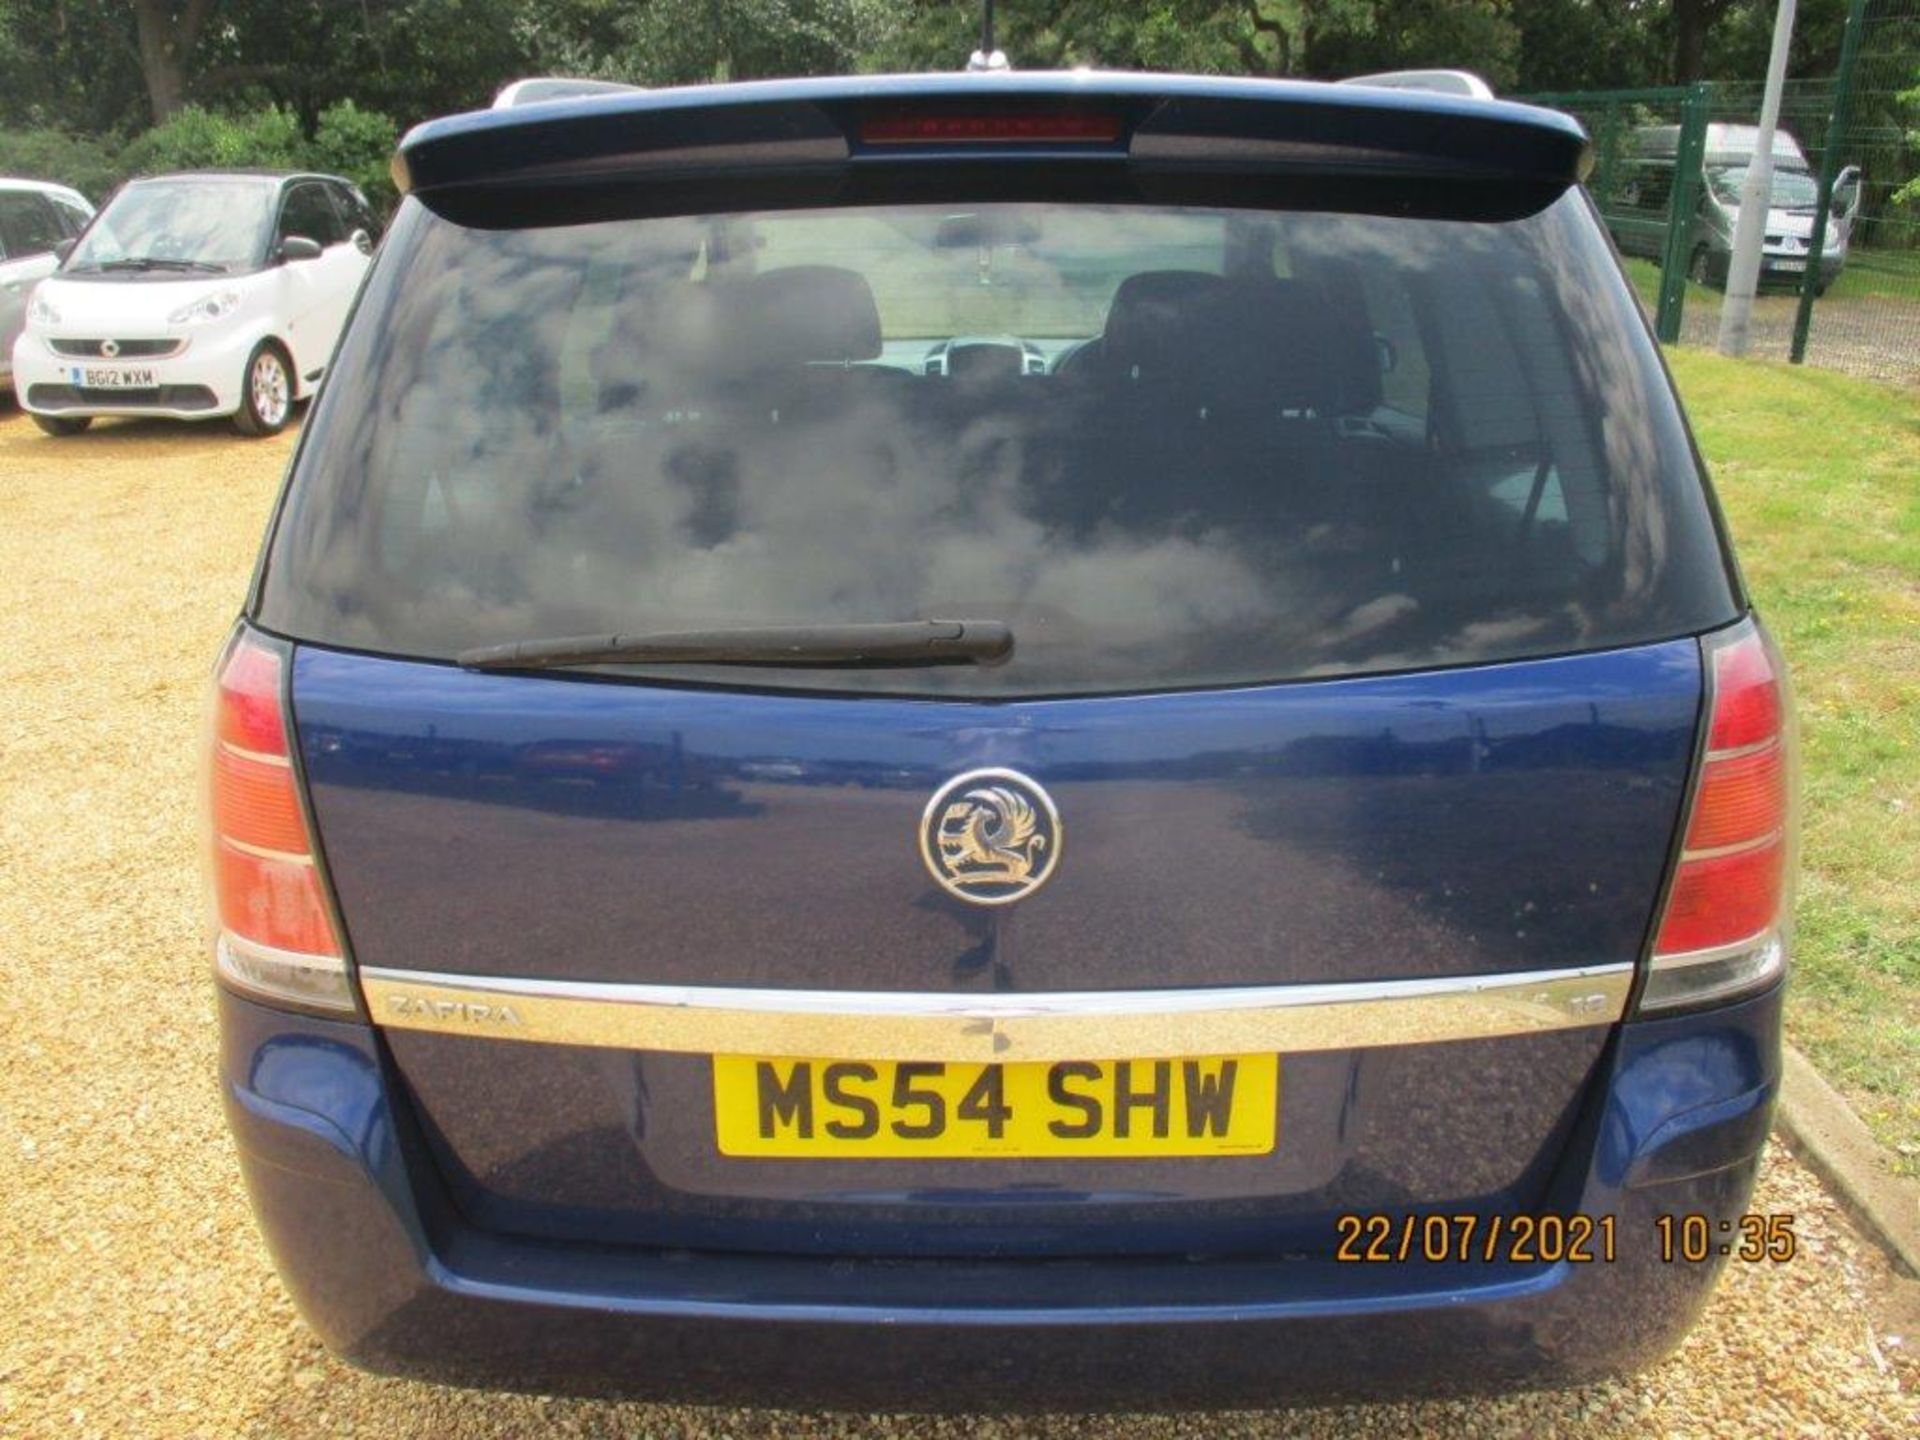 06 06 Vauxhall Zafira - Image 5 of 21